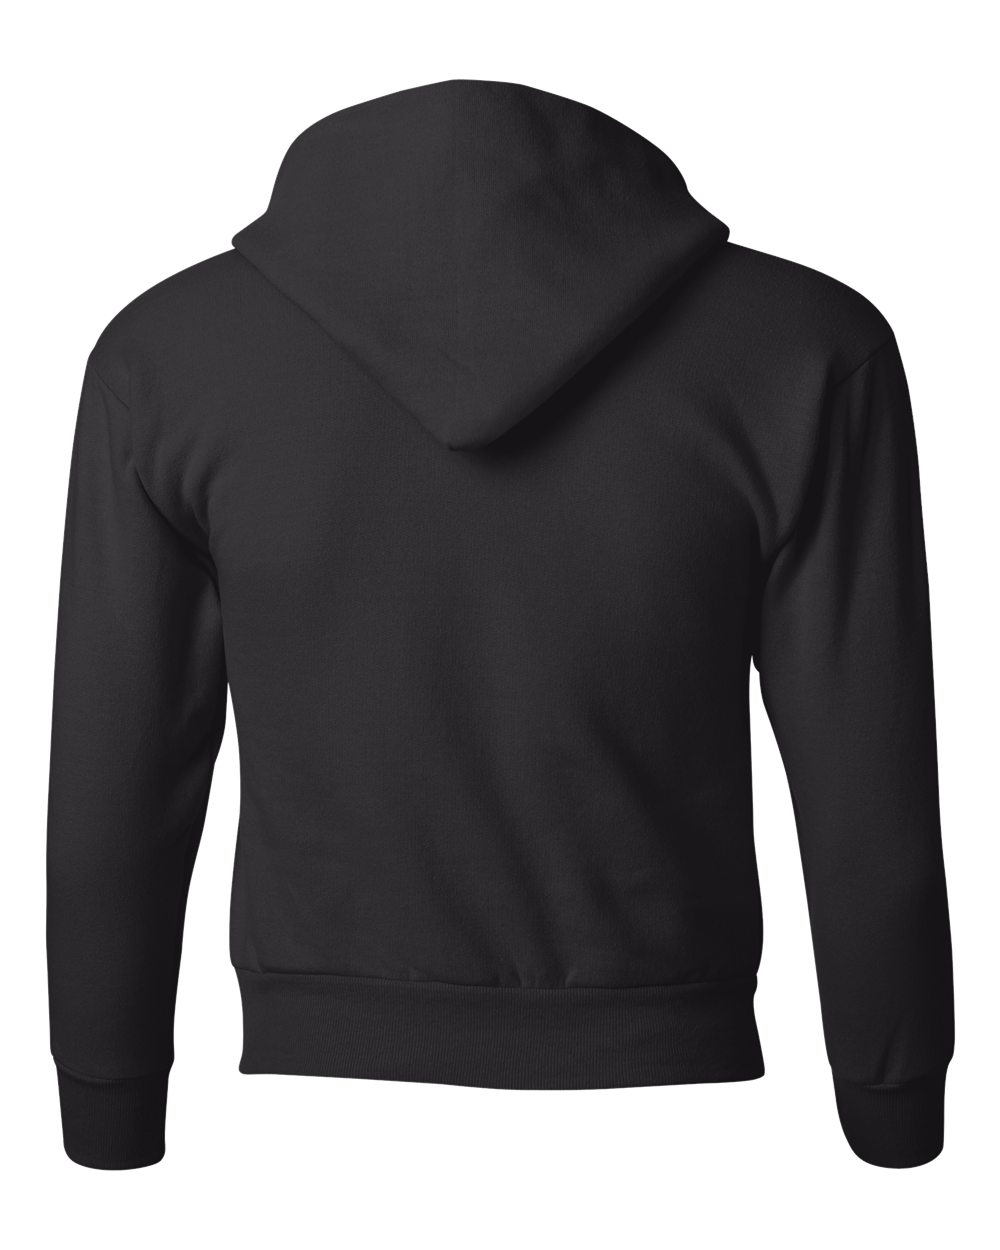 Hanes P473 Ecosmart Youth Hooded Sweatshirt